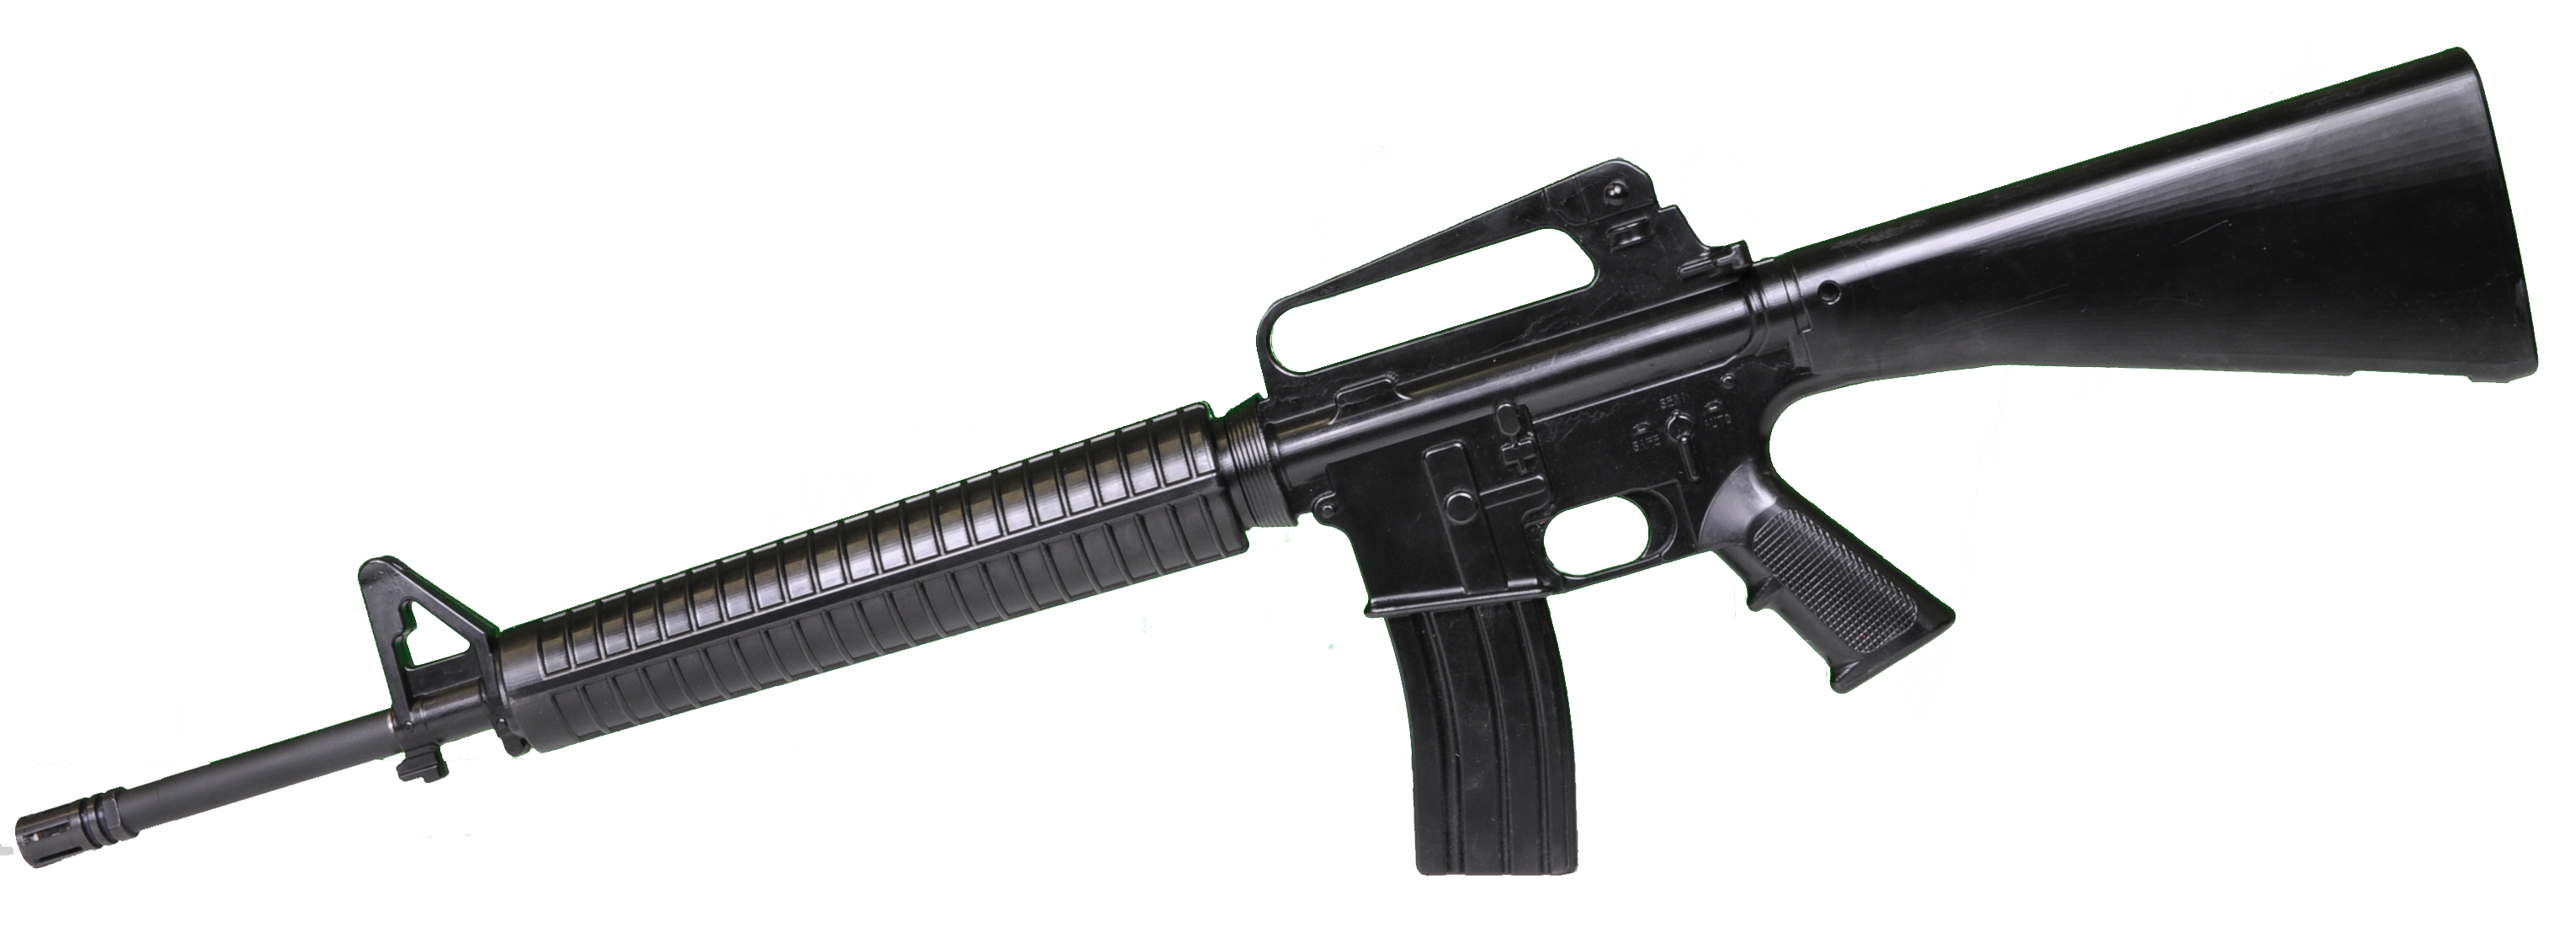 M16 Amerikanisches Sturmgewehr